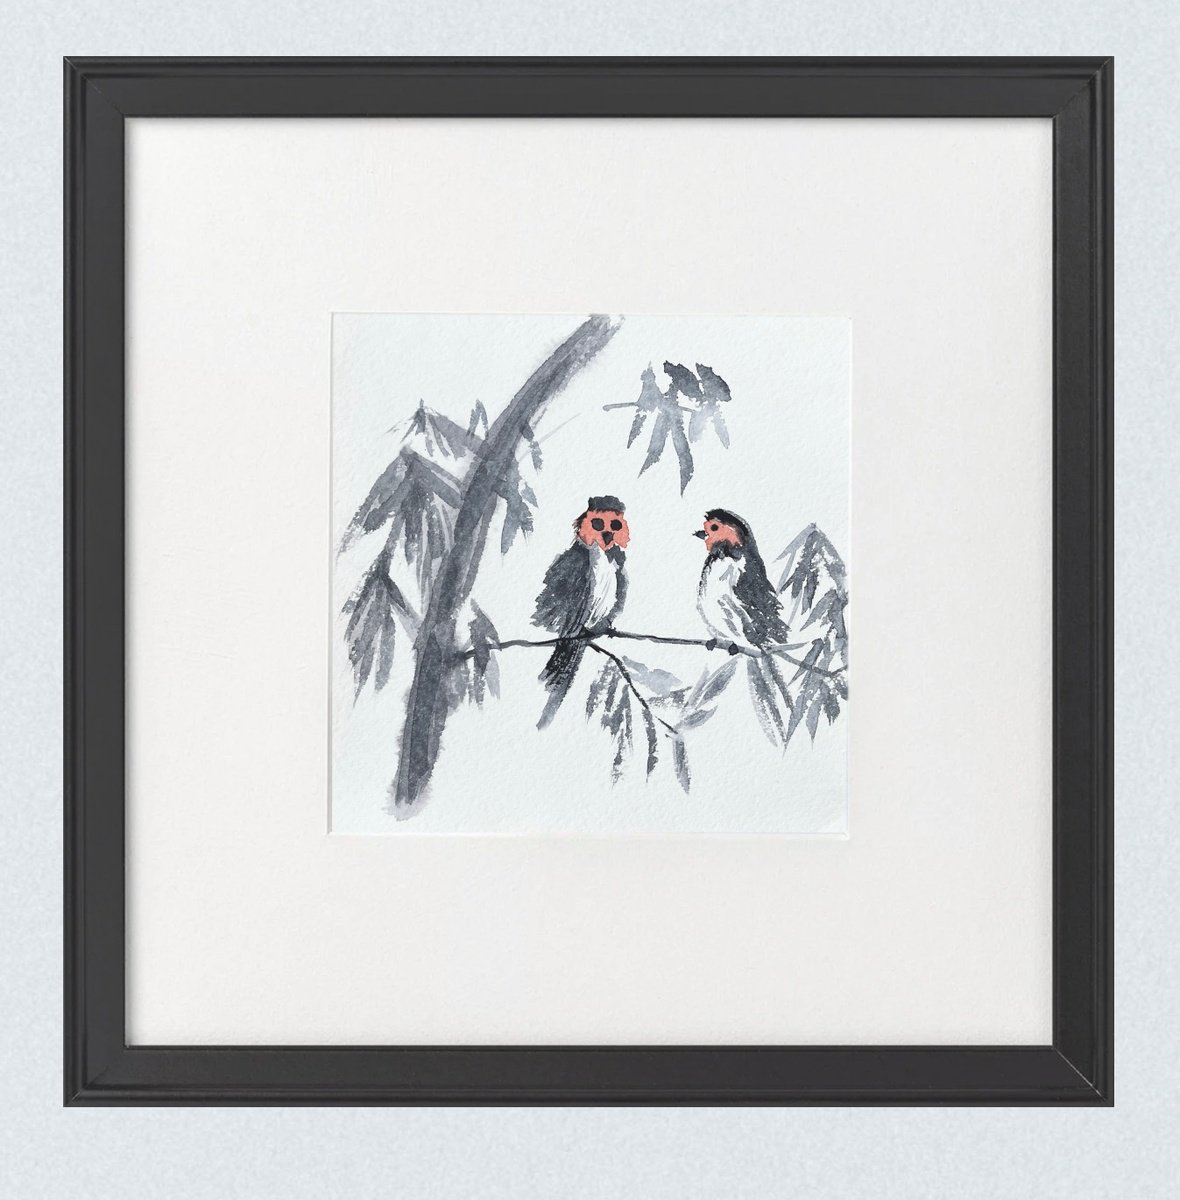 The Birds by Diana Lozko